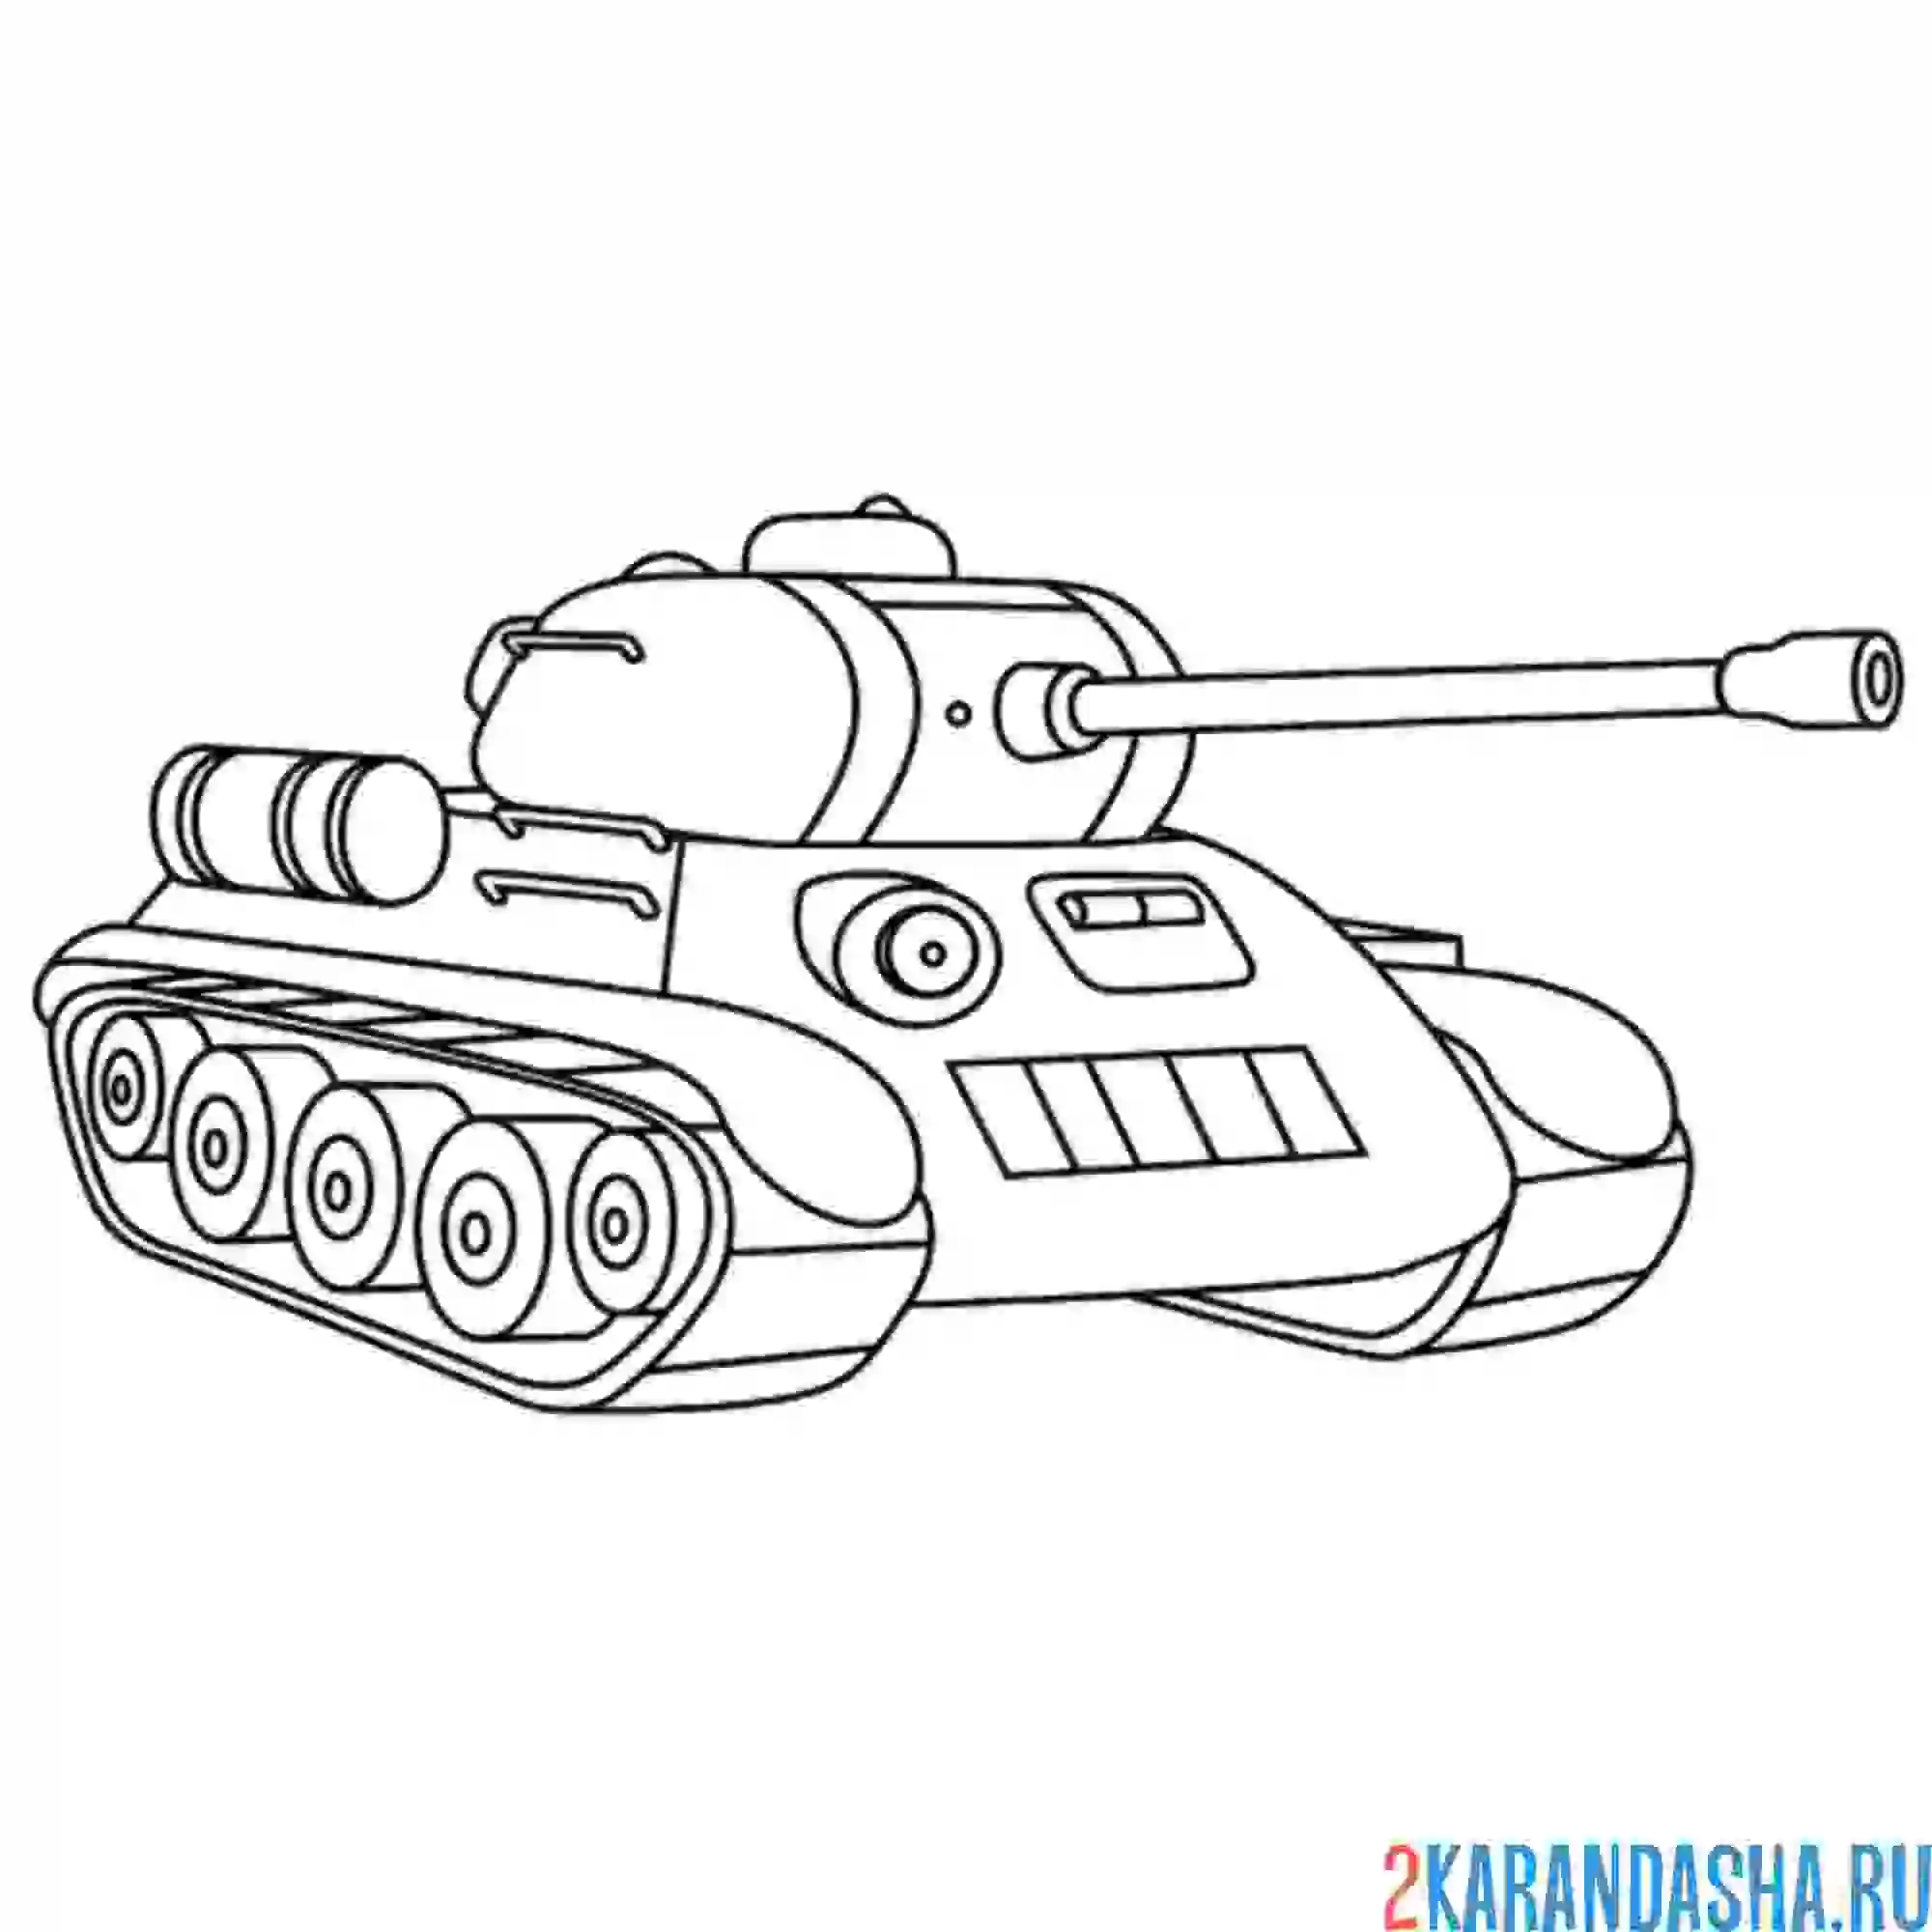 Раскраска знаменитый танк т-34